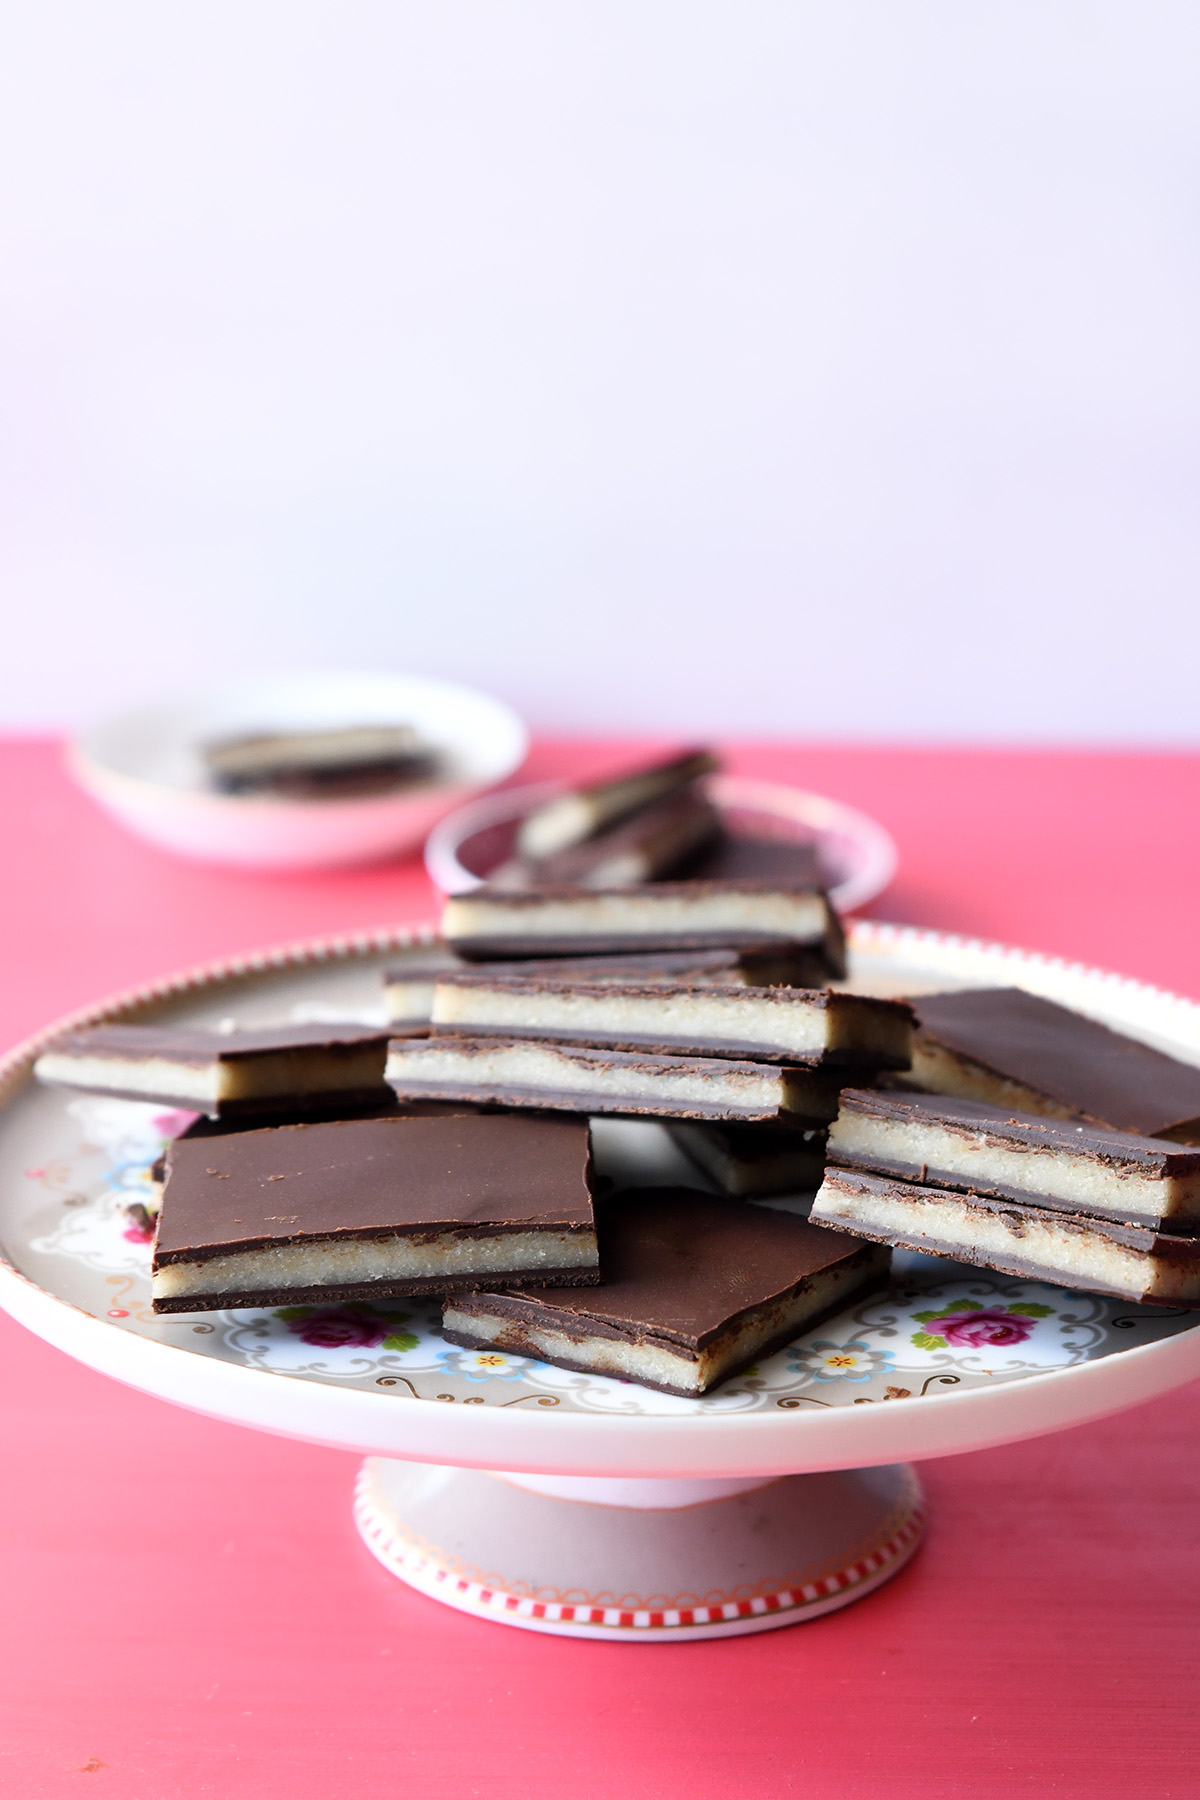 שברי שוקולד במילוי מרציפן – ללא סוכר ומ-3 מצרכים!